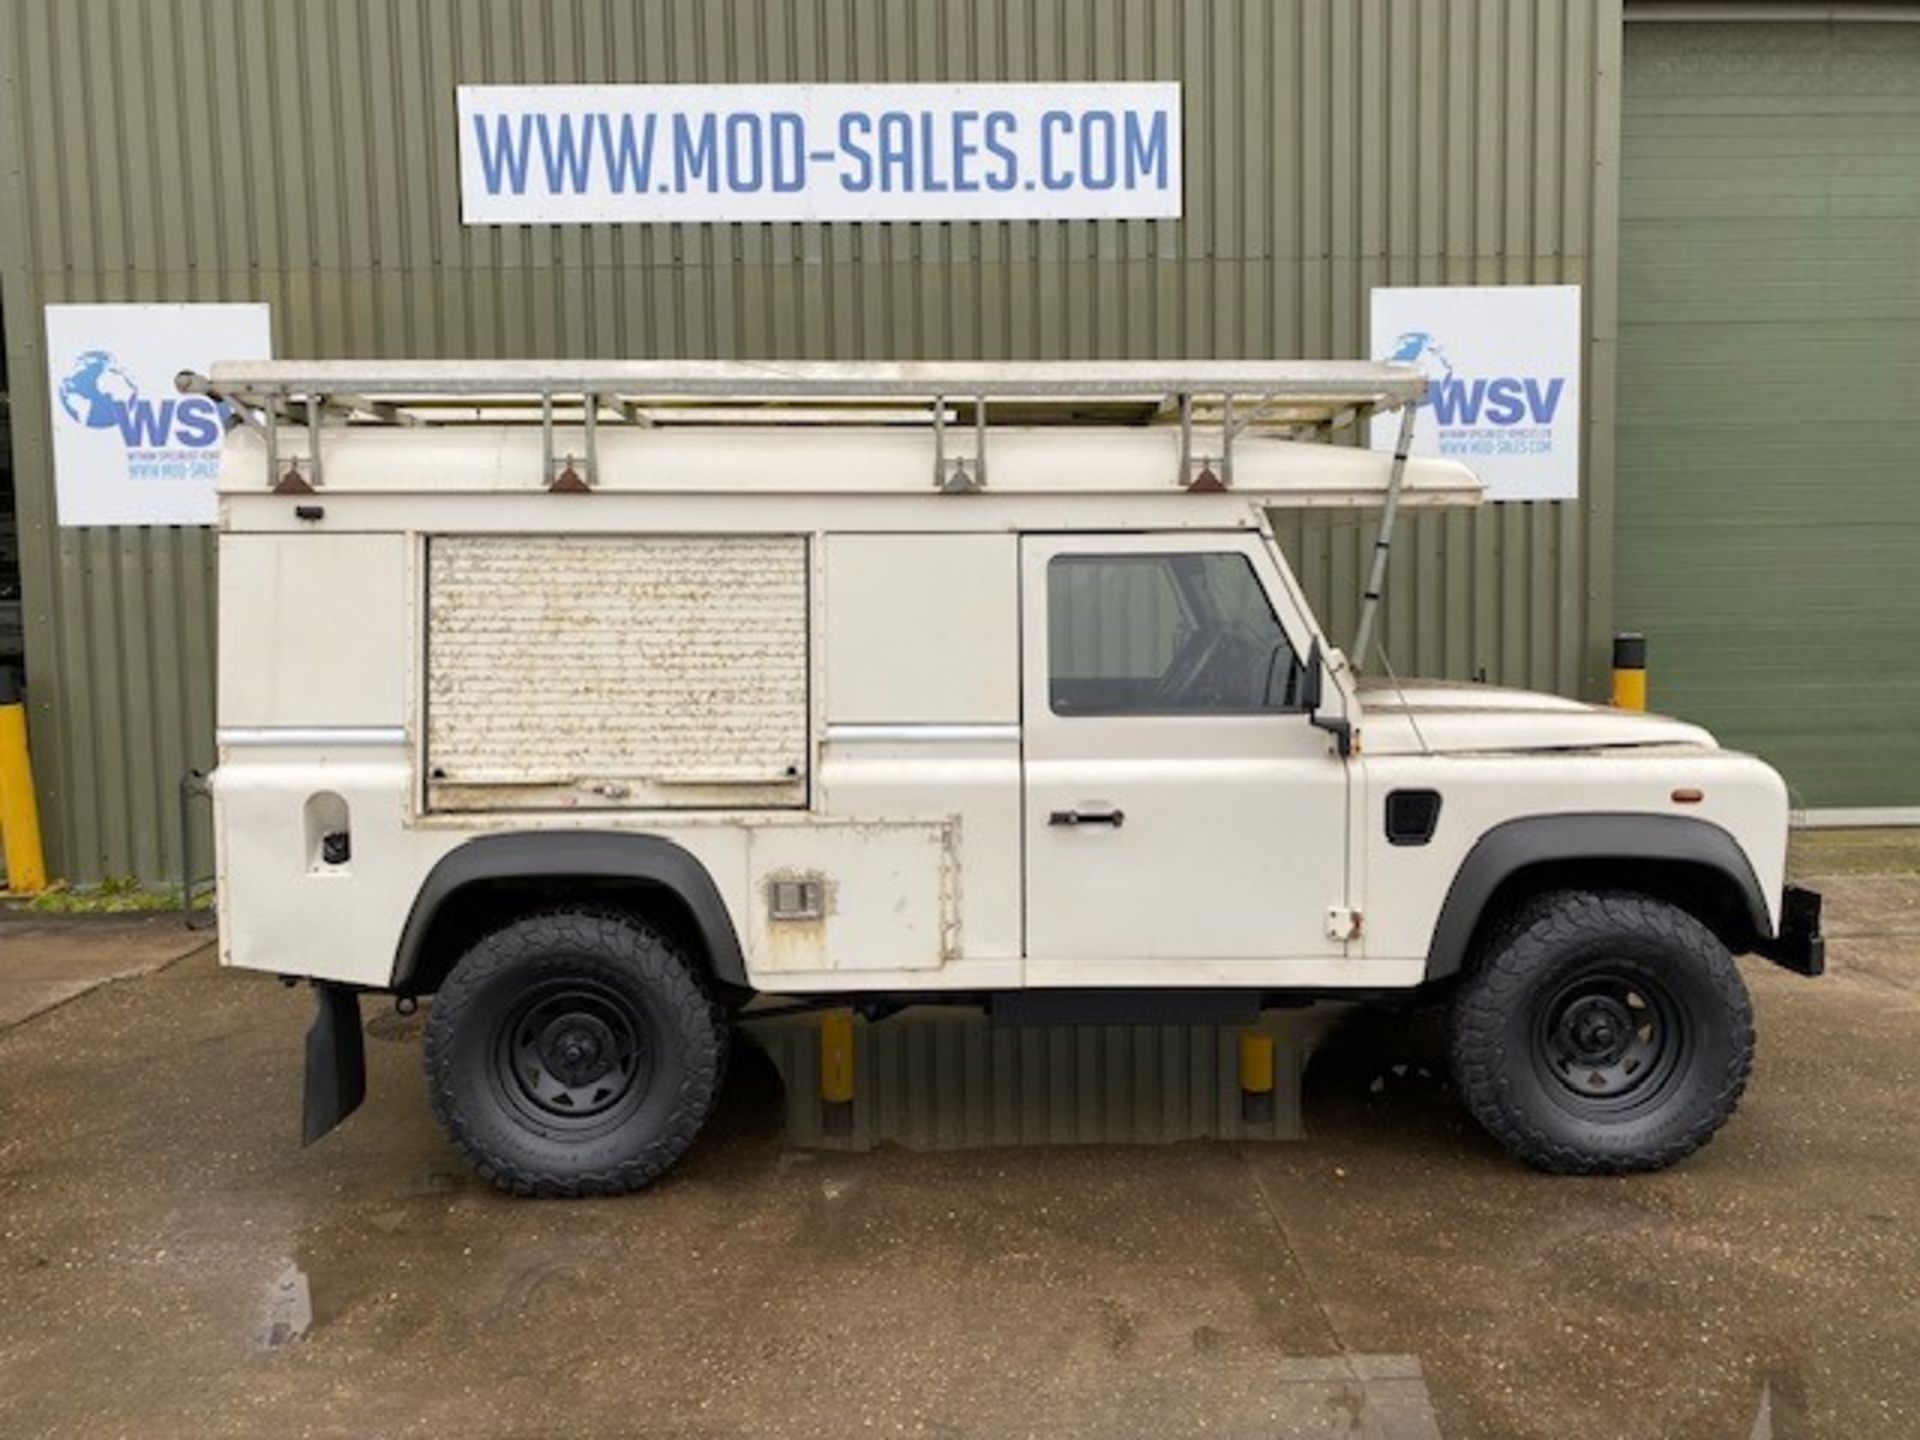 Land Rover Defender 110 2.4 Utility (mobile workshop) - Image 4 of 64